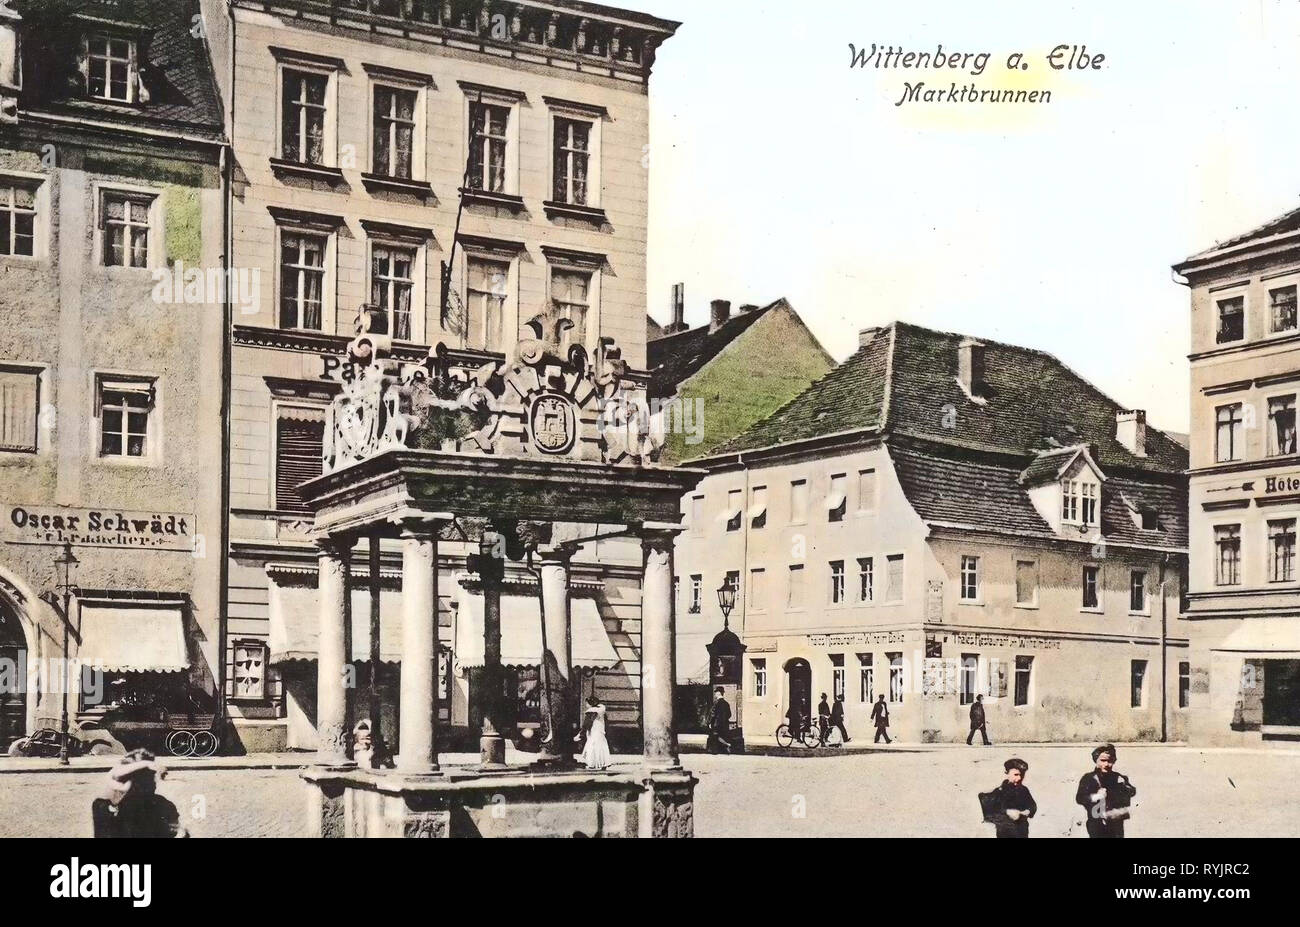 Marktbrunnen (Wittenberg), Buildings in Wittenberg, Markt (Wittenberg), 1911, Saxony-Anhalt, Wittenberg, unterer Marktbrunnen Markt und Marktbunnen, Germany Stock Photo